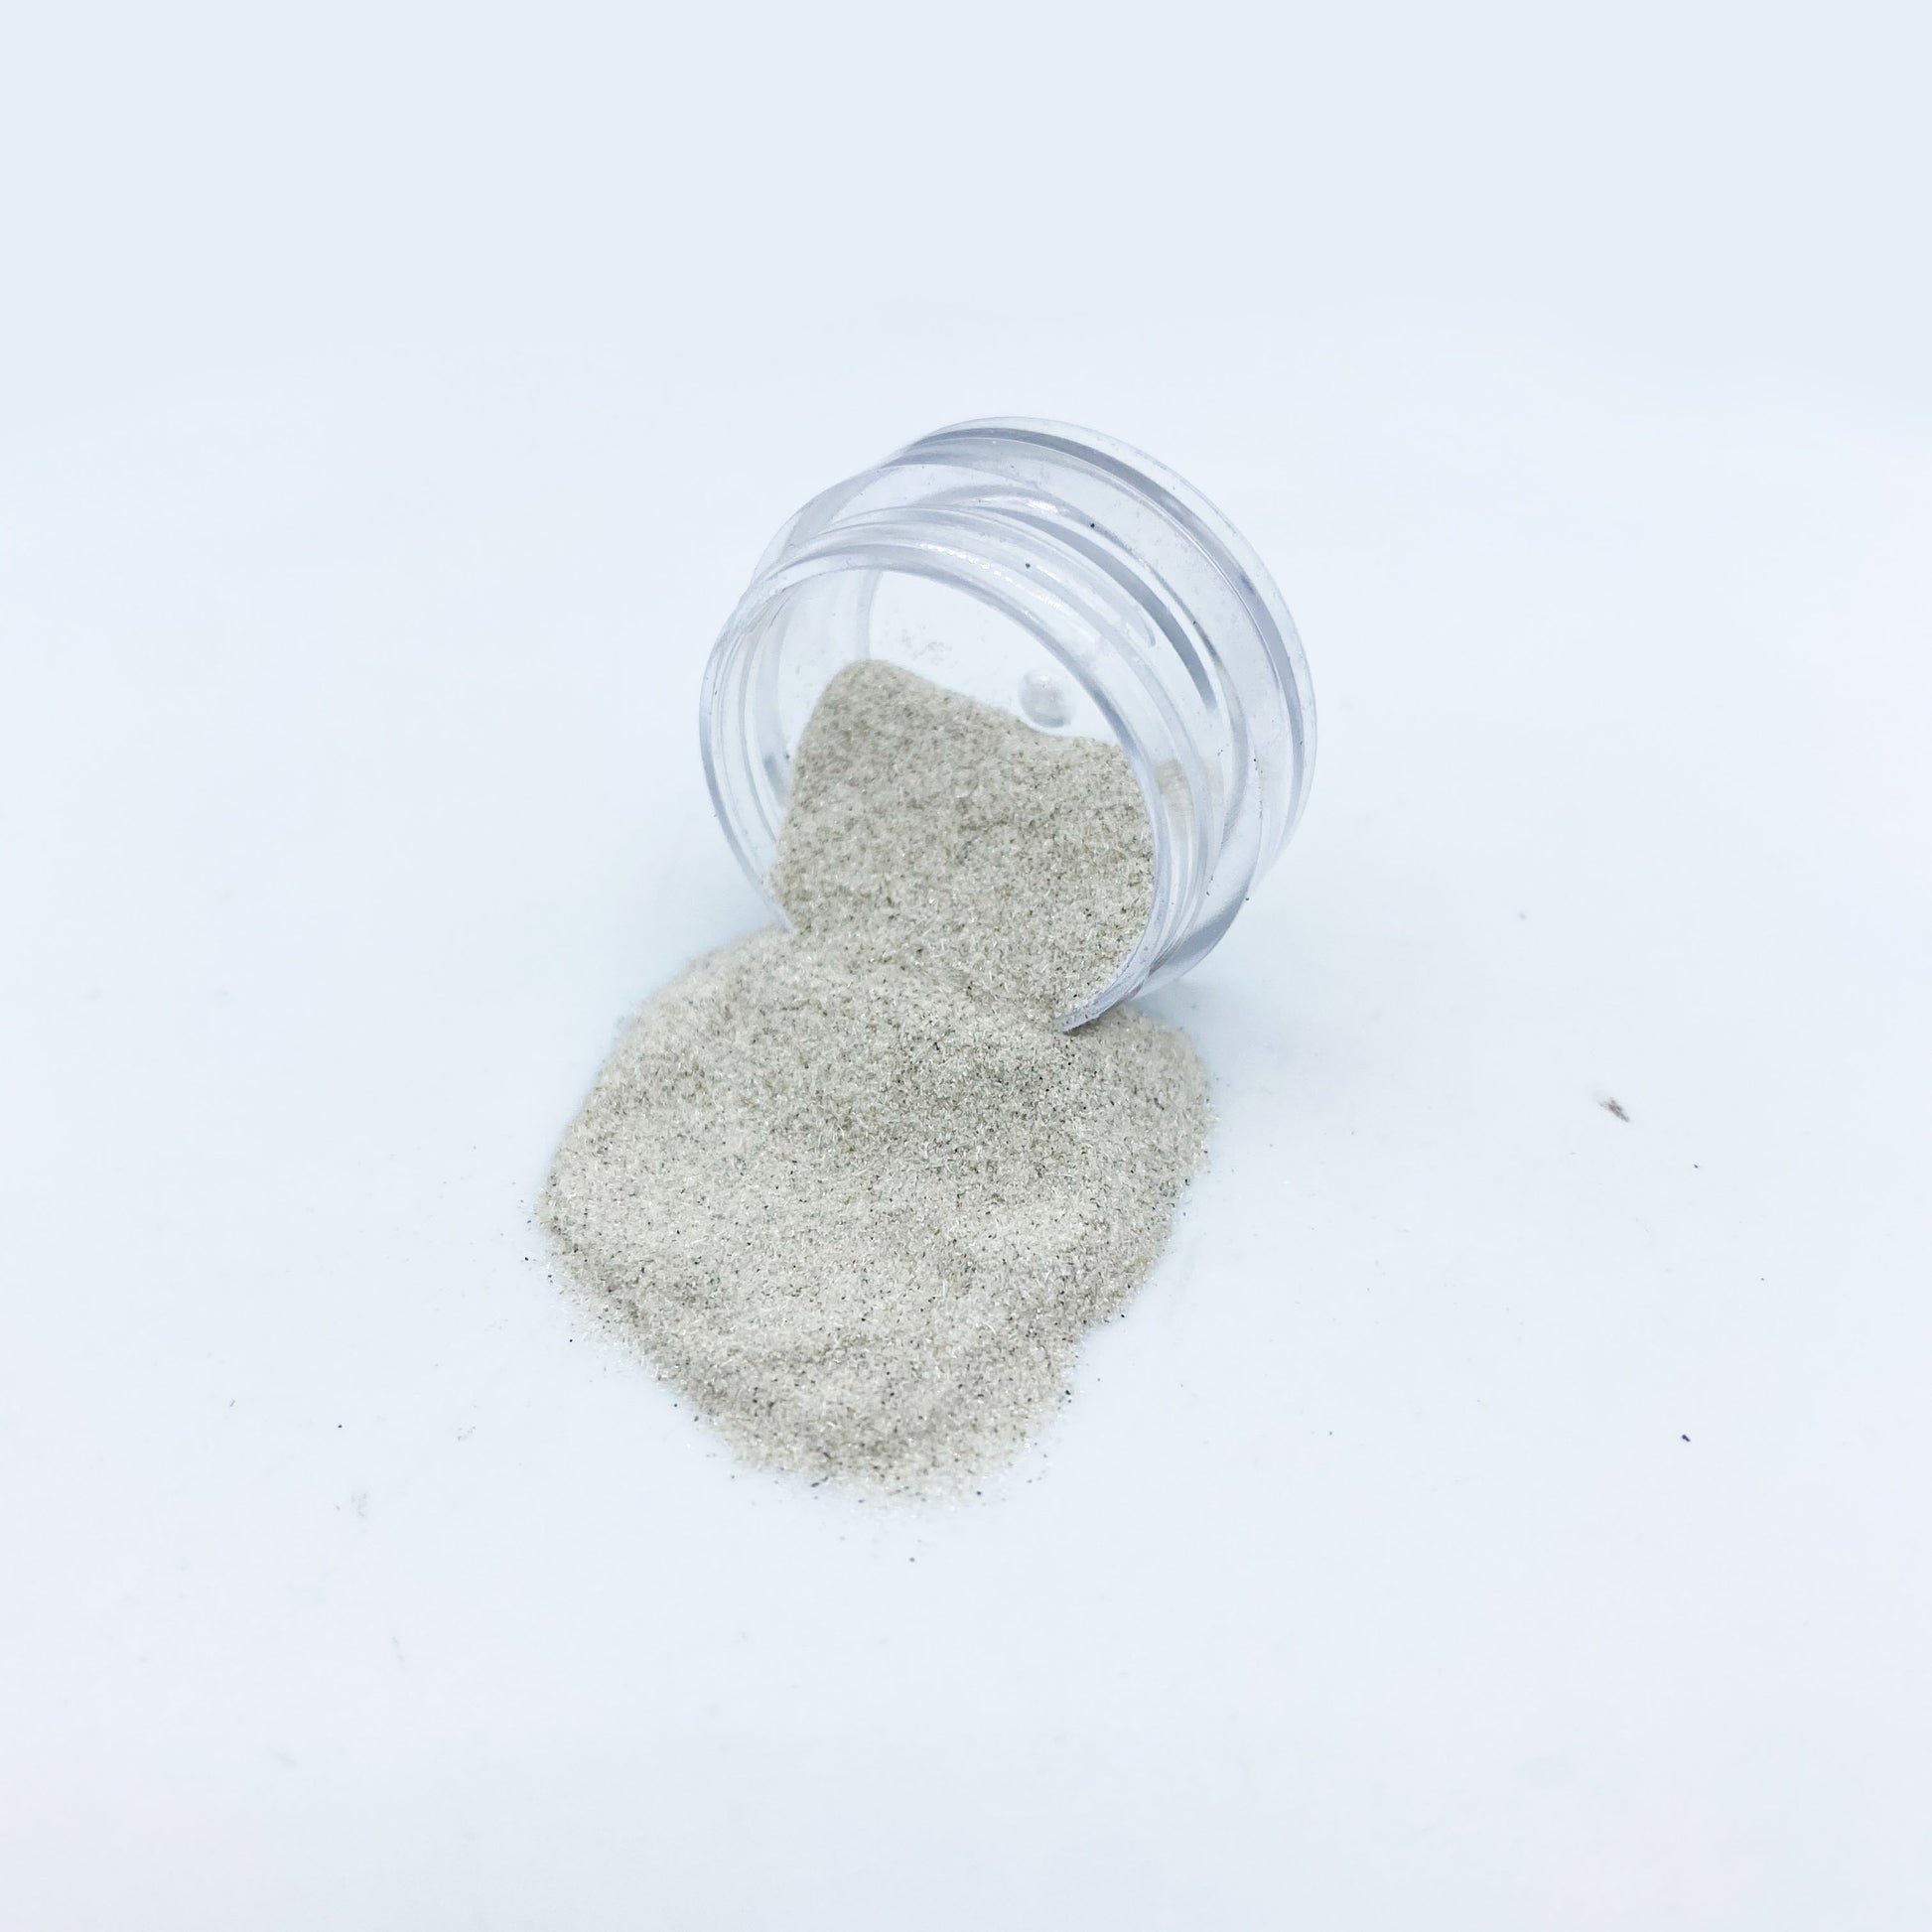 Diamond Dust – Glitter Makes It